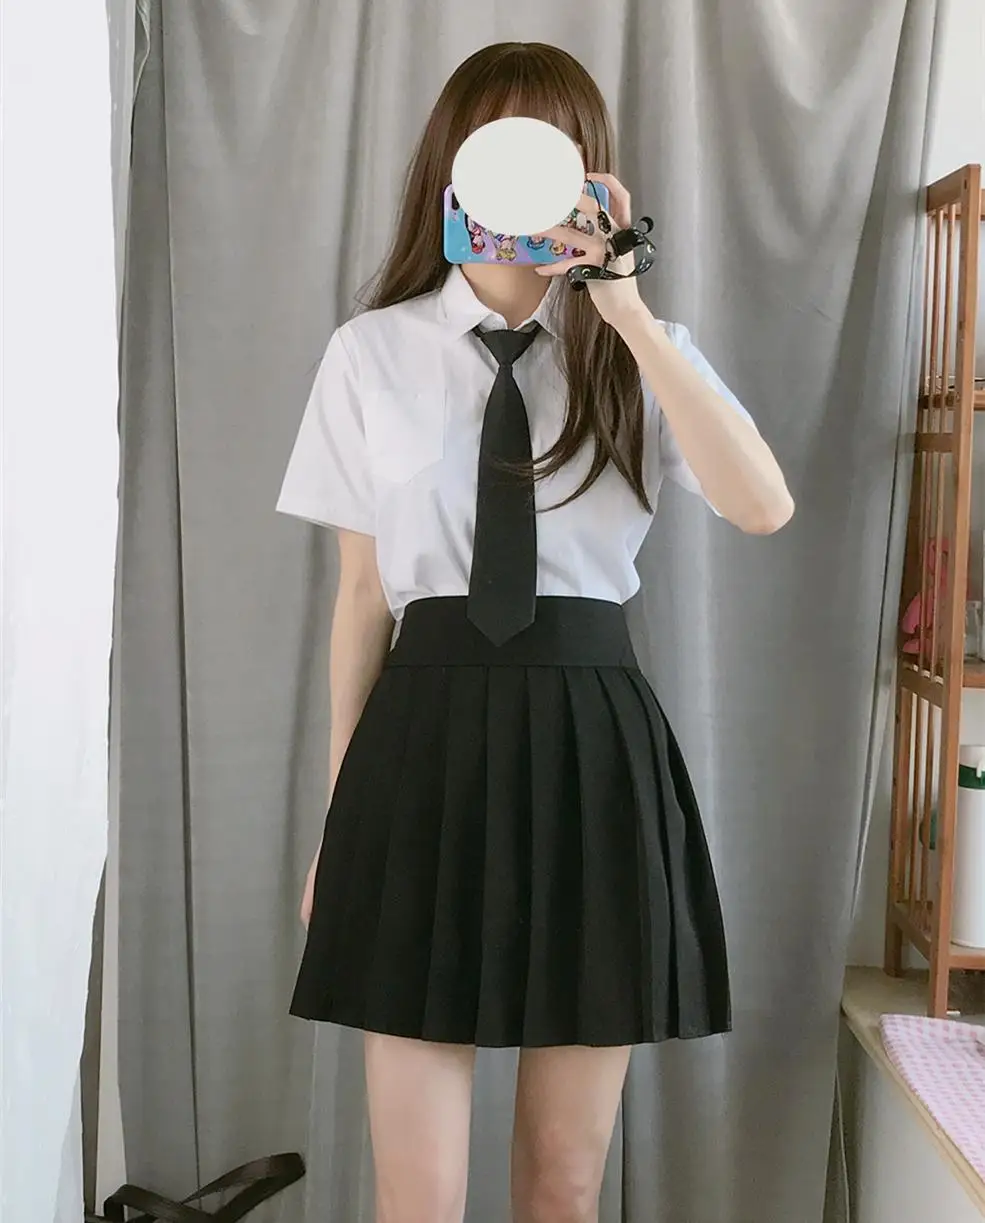 jk униформа для девочек, галстук-бабочка, милая японская Корейская школьная форма, аксессуары, галстук-бабочка, дизайн, широкий галстук